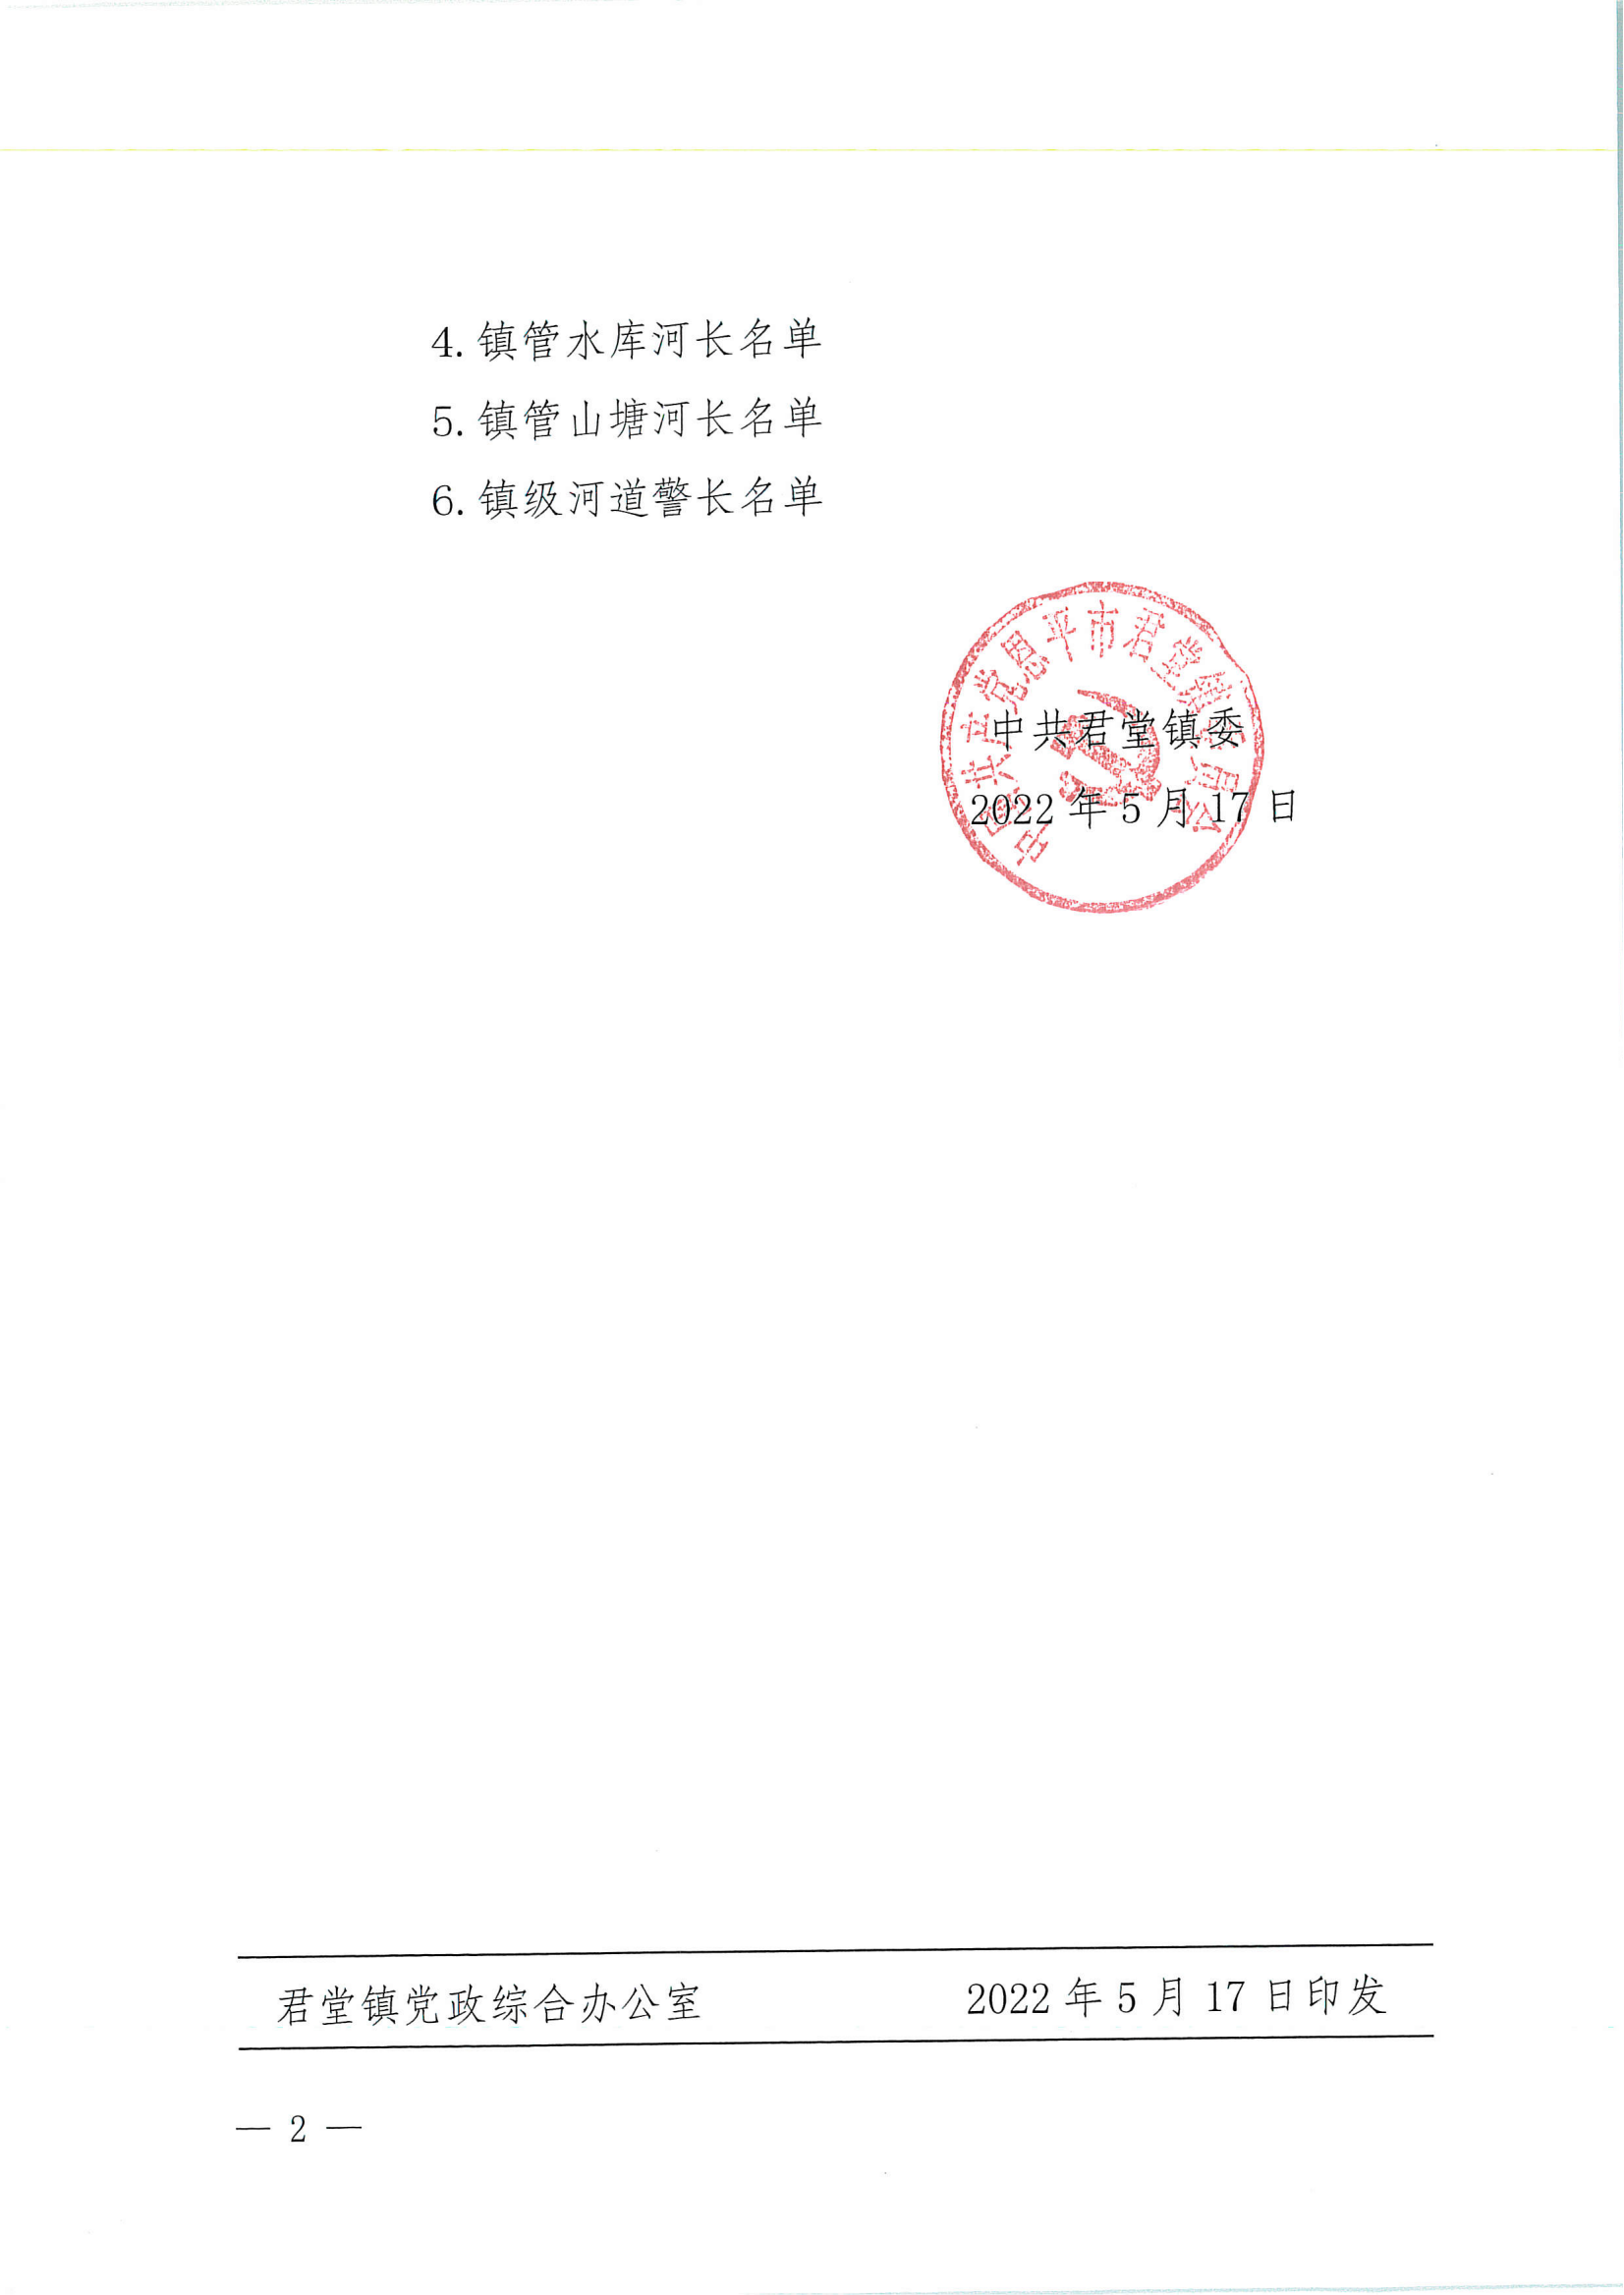 君委〔2022〕8号关于调整君堂镇河长制工作的河长名单的通知_01.png